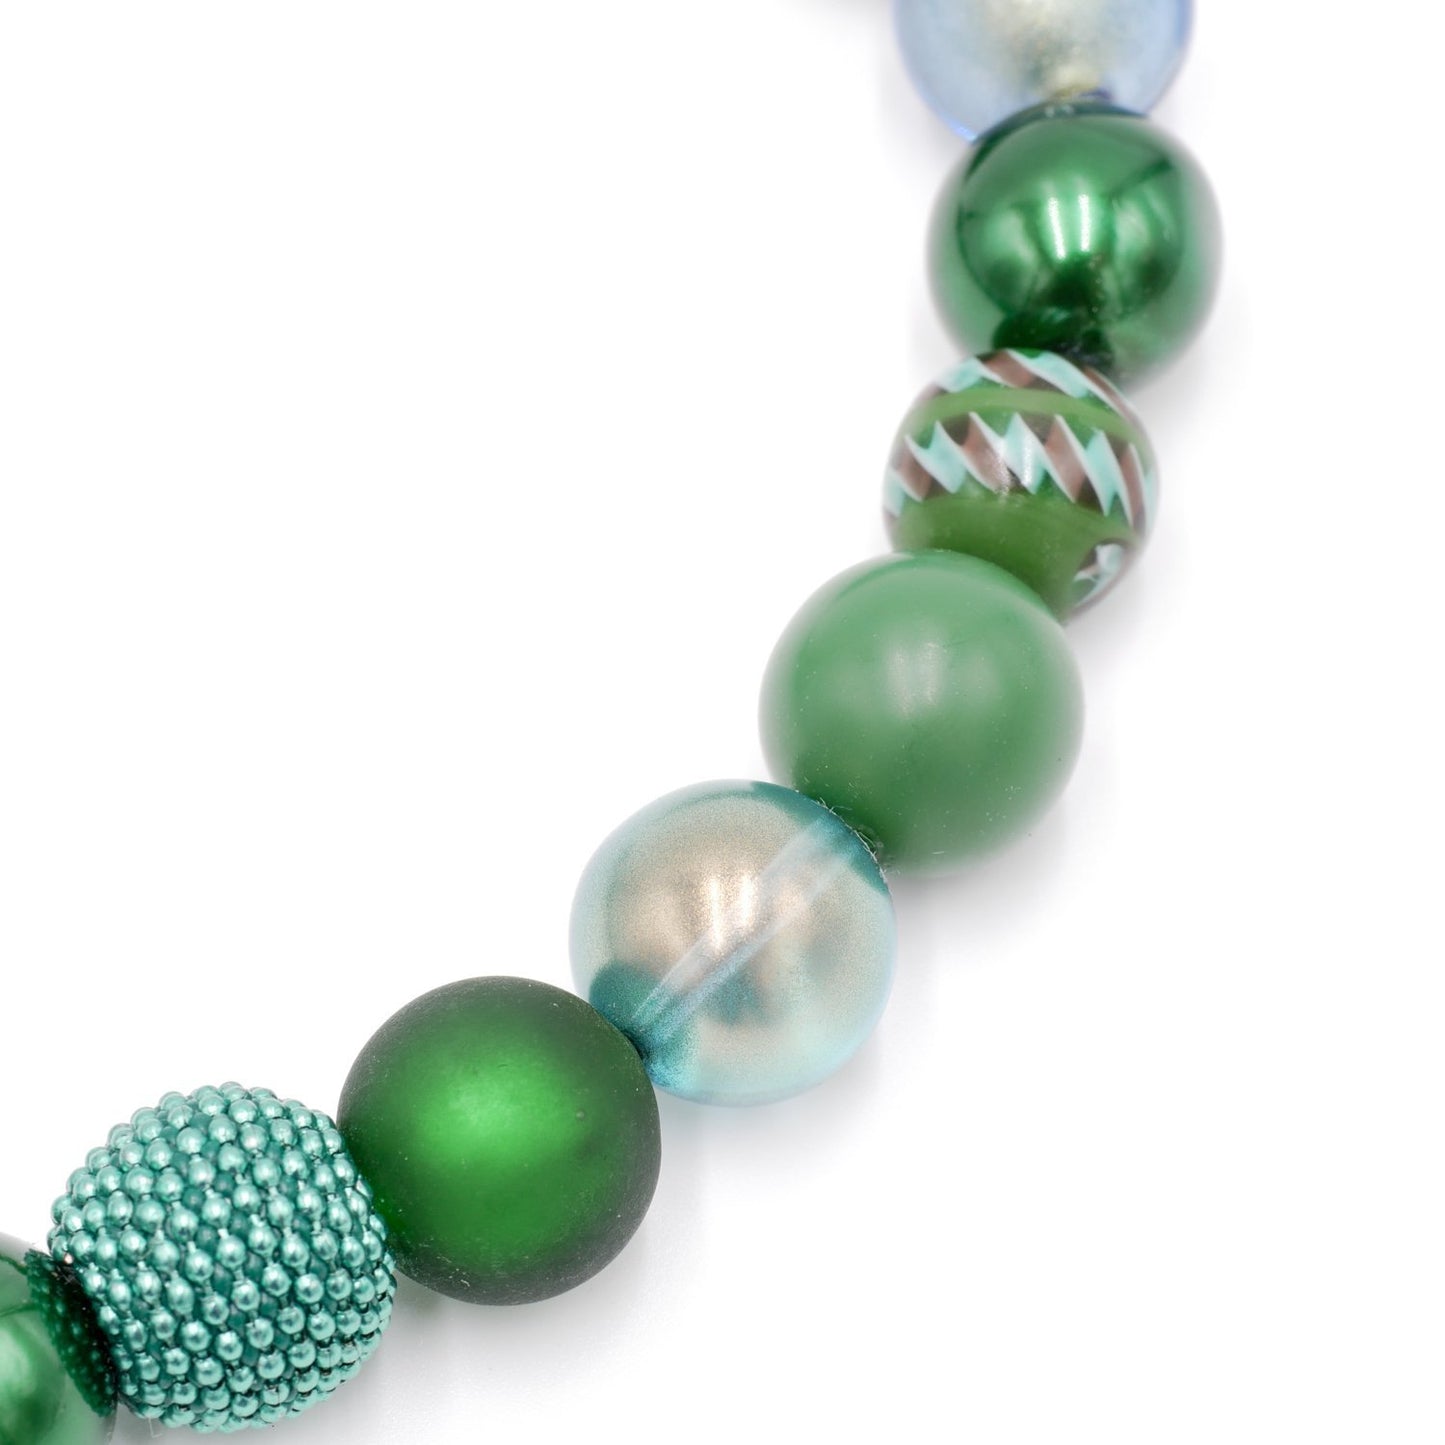 Perlenkette Opal Green